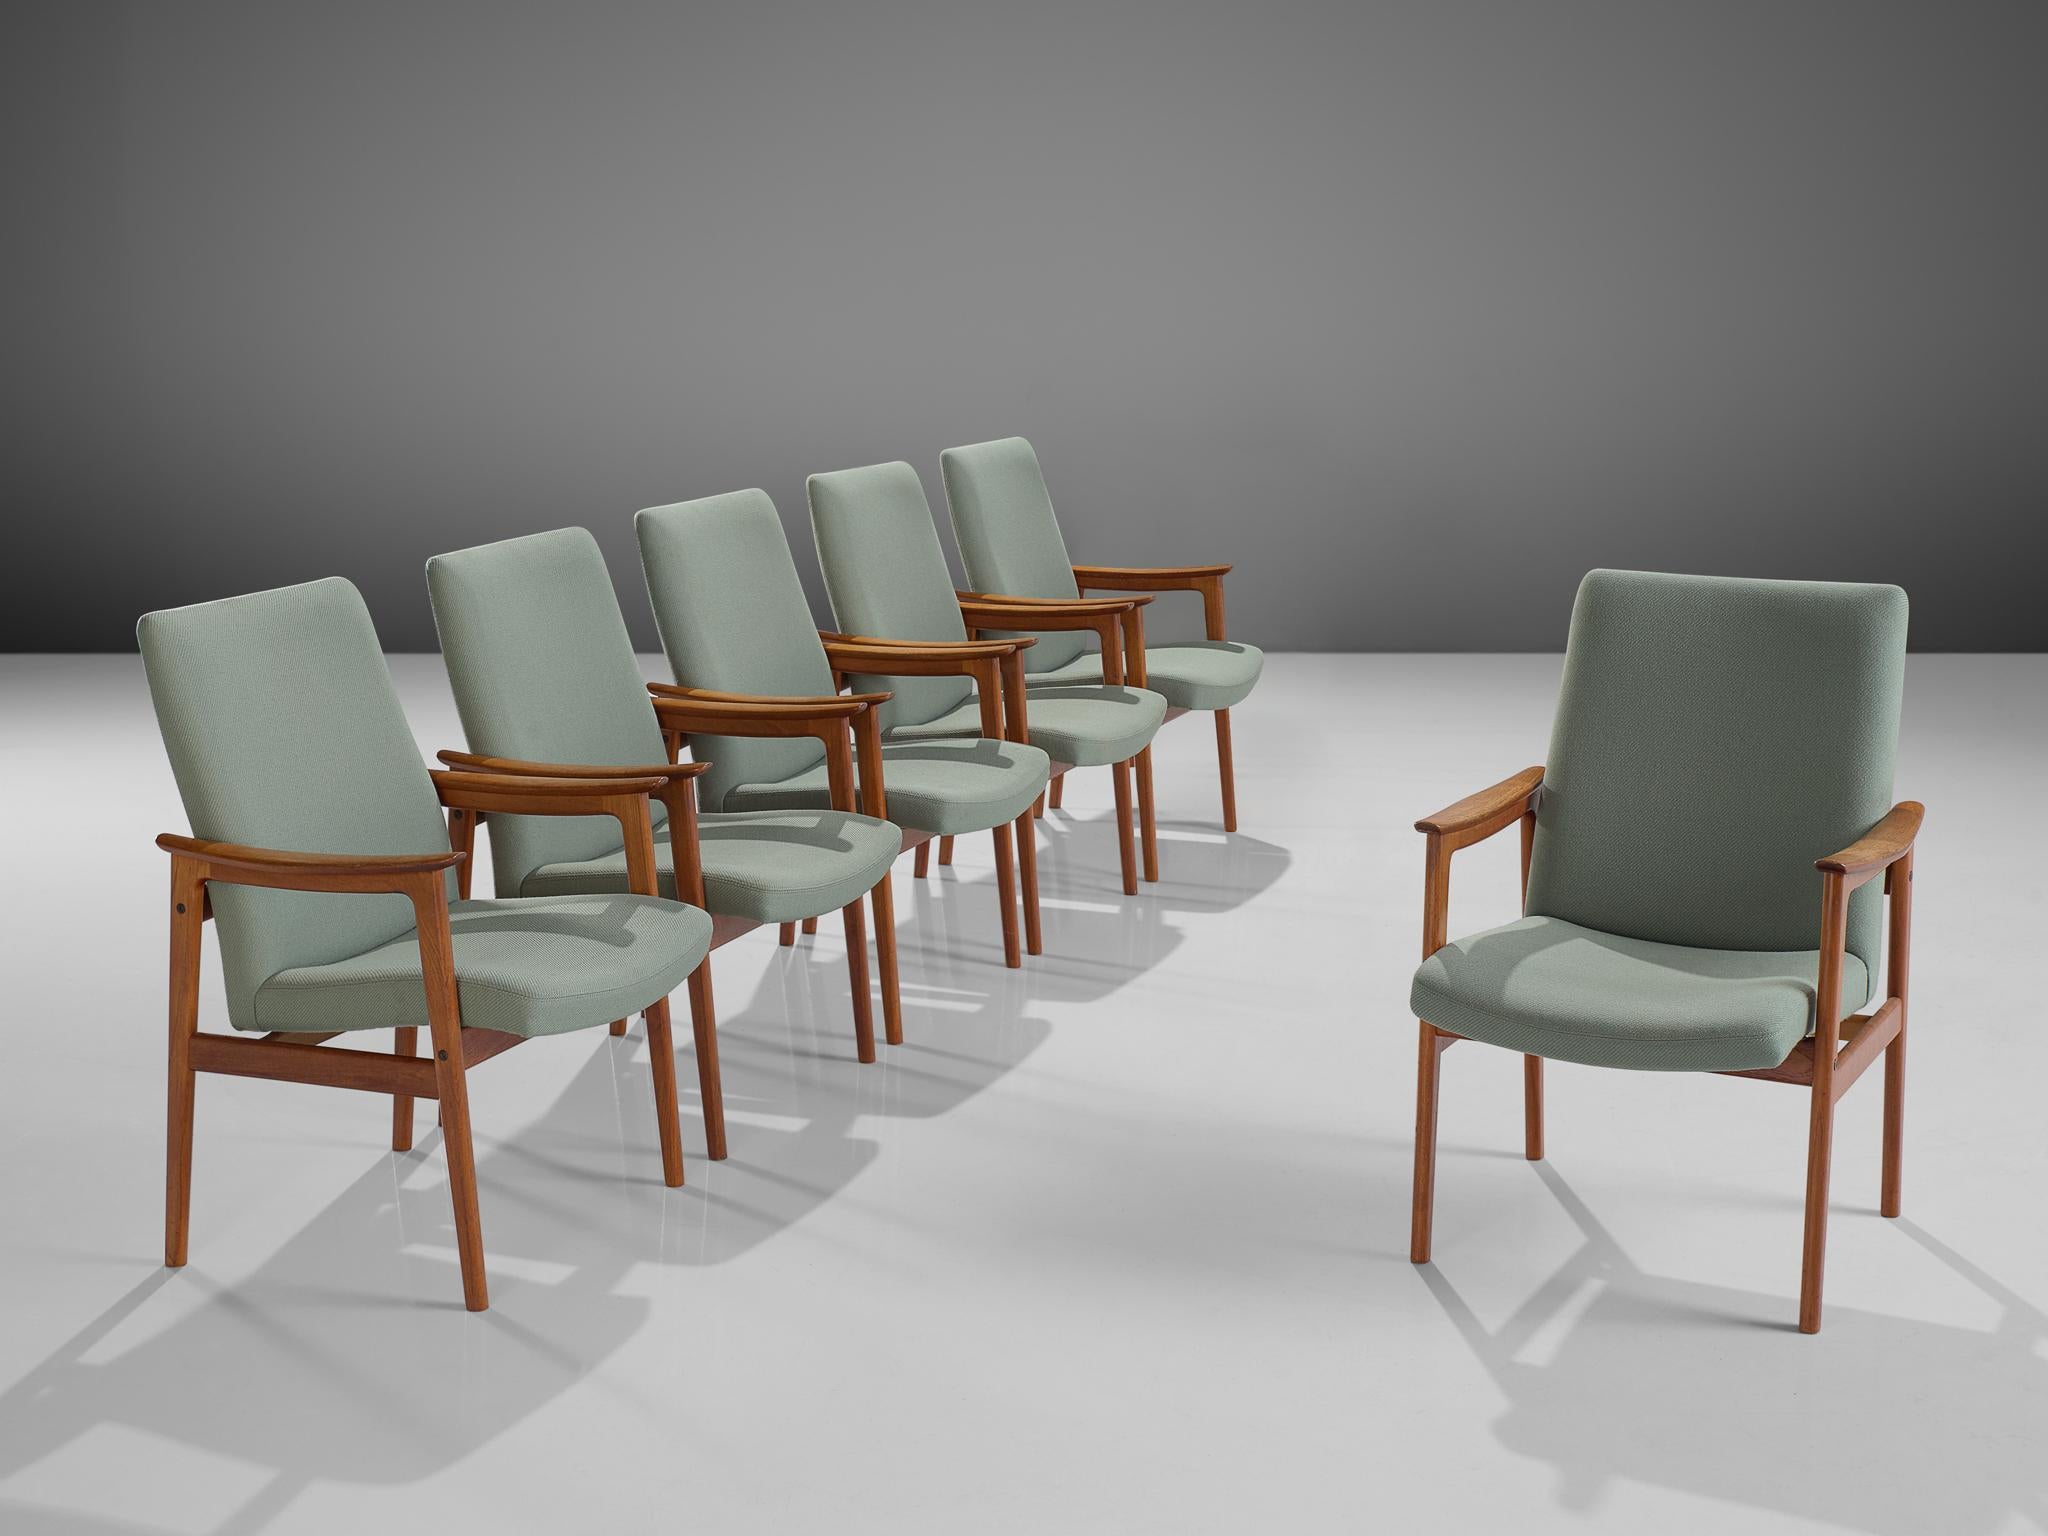 Satz von sechs Sesseln, Teakholz und mintgrüner Stoff, Skandinavien, 1950er Jahre. 

Diese skandinavischen Teakholz-Esszimmerstühle mit Armlehnen sind sowohl stattlich als auch bescheiden. Dieses Set hat einen eleganten Teakholzrahmen mit einer